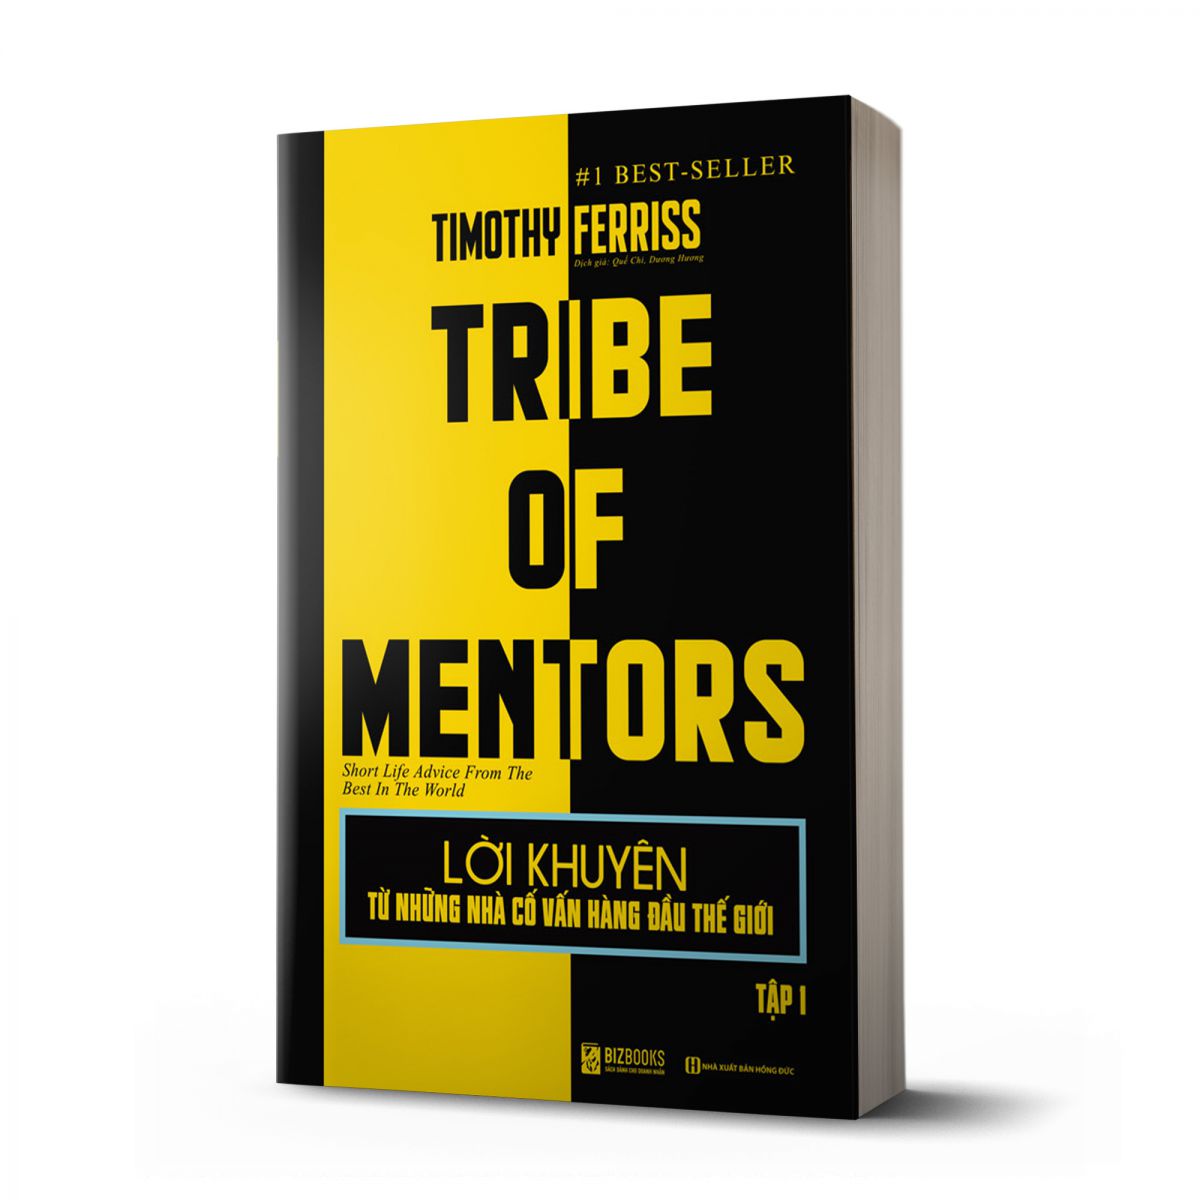 Lời khuyên từ những nhà cố vấn hàng đầu thế giới – Tribe of mentor (Tập 1) 1 